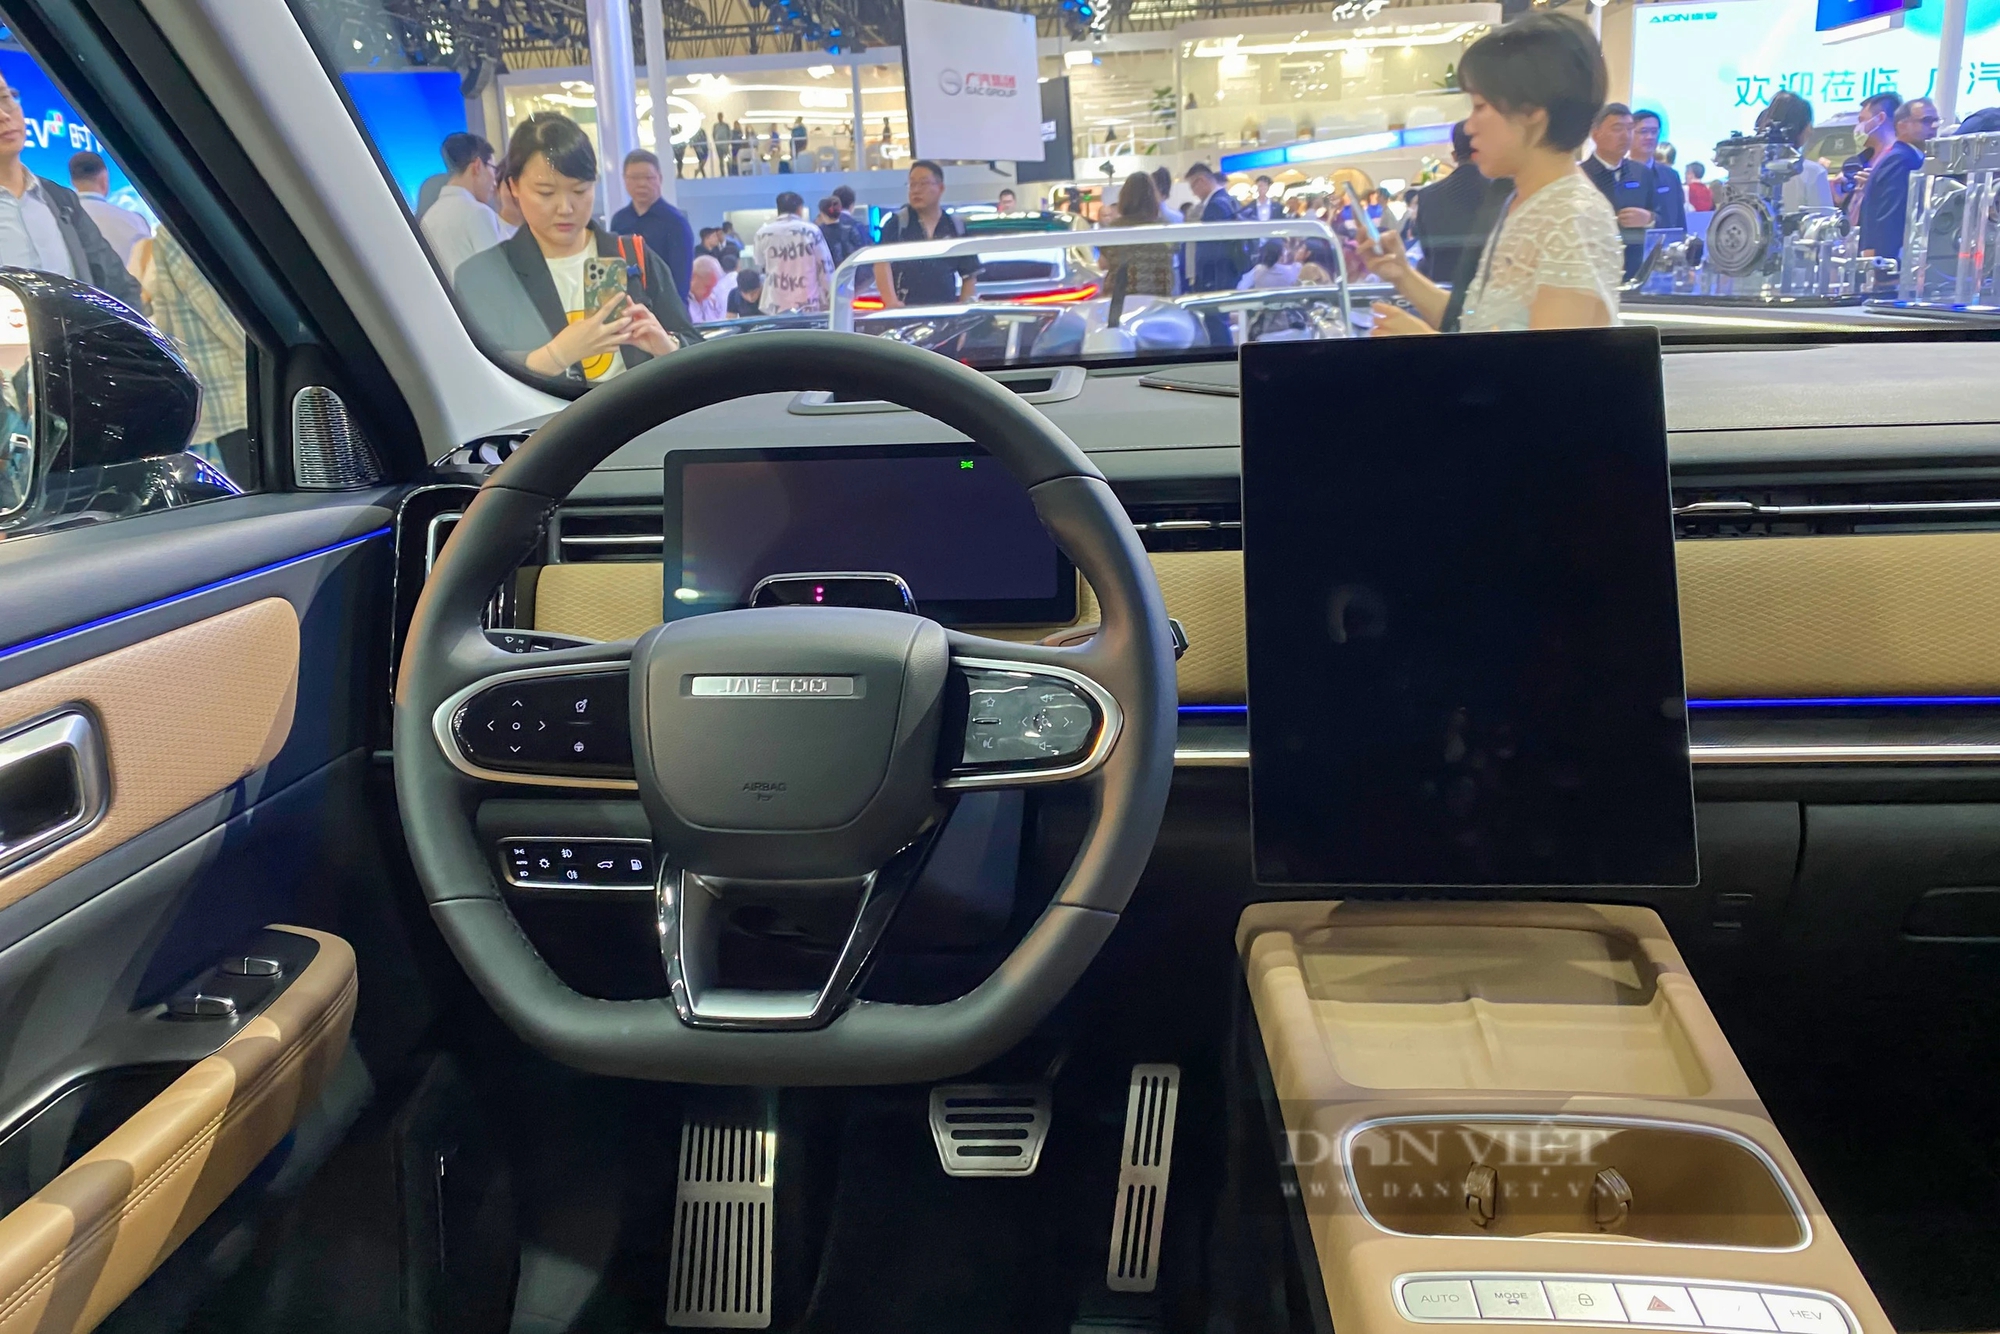 Trải nghiệm thực tế Jaecoo J7 mở bán ở Việt Nam cuối năm, đối thủ nặng ký của Mazda CX-5, Honda CR-V- Ảnh 10.